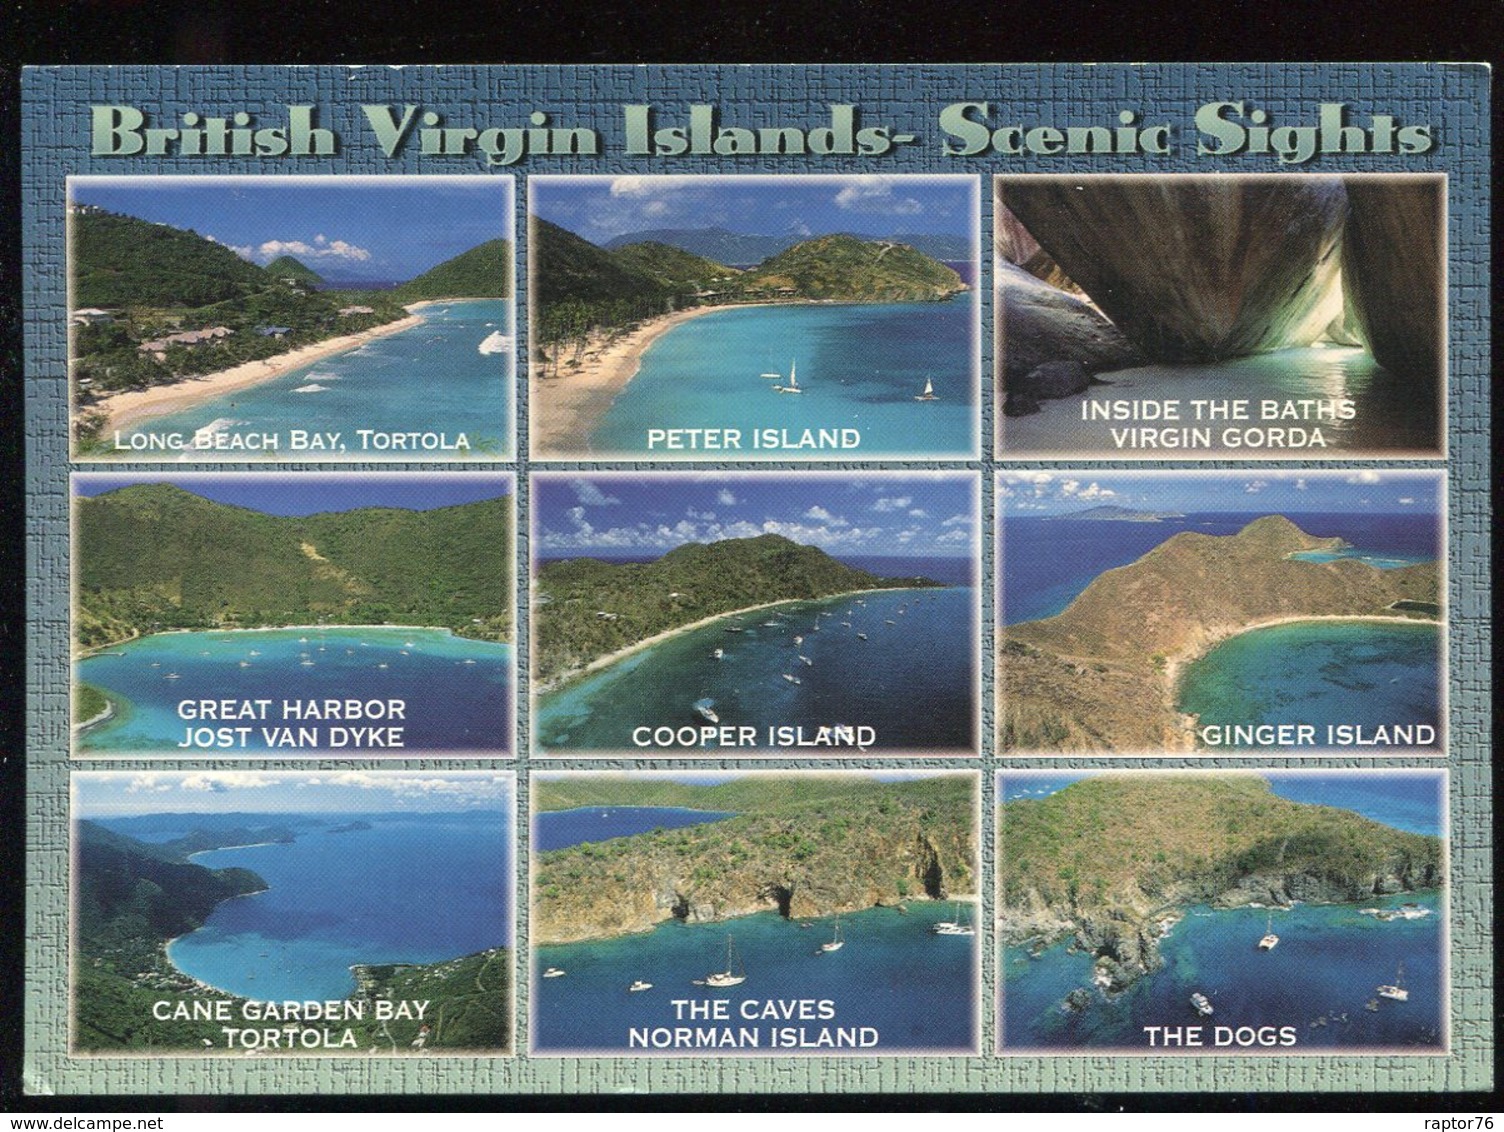 CPM Antilles Iles Vierges British Virgin Islands Scnic Sights Multi Vues - Virgin Islands, British